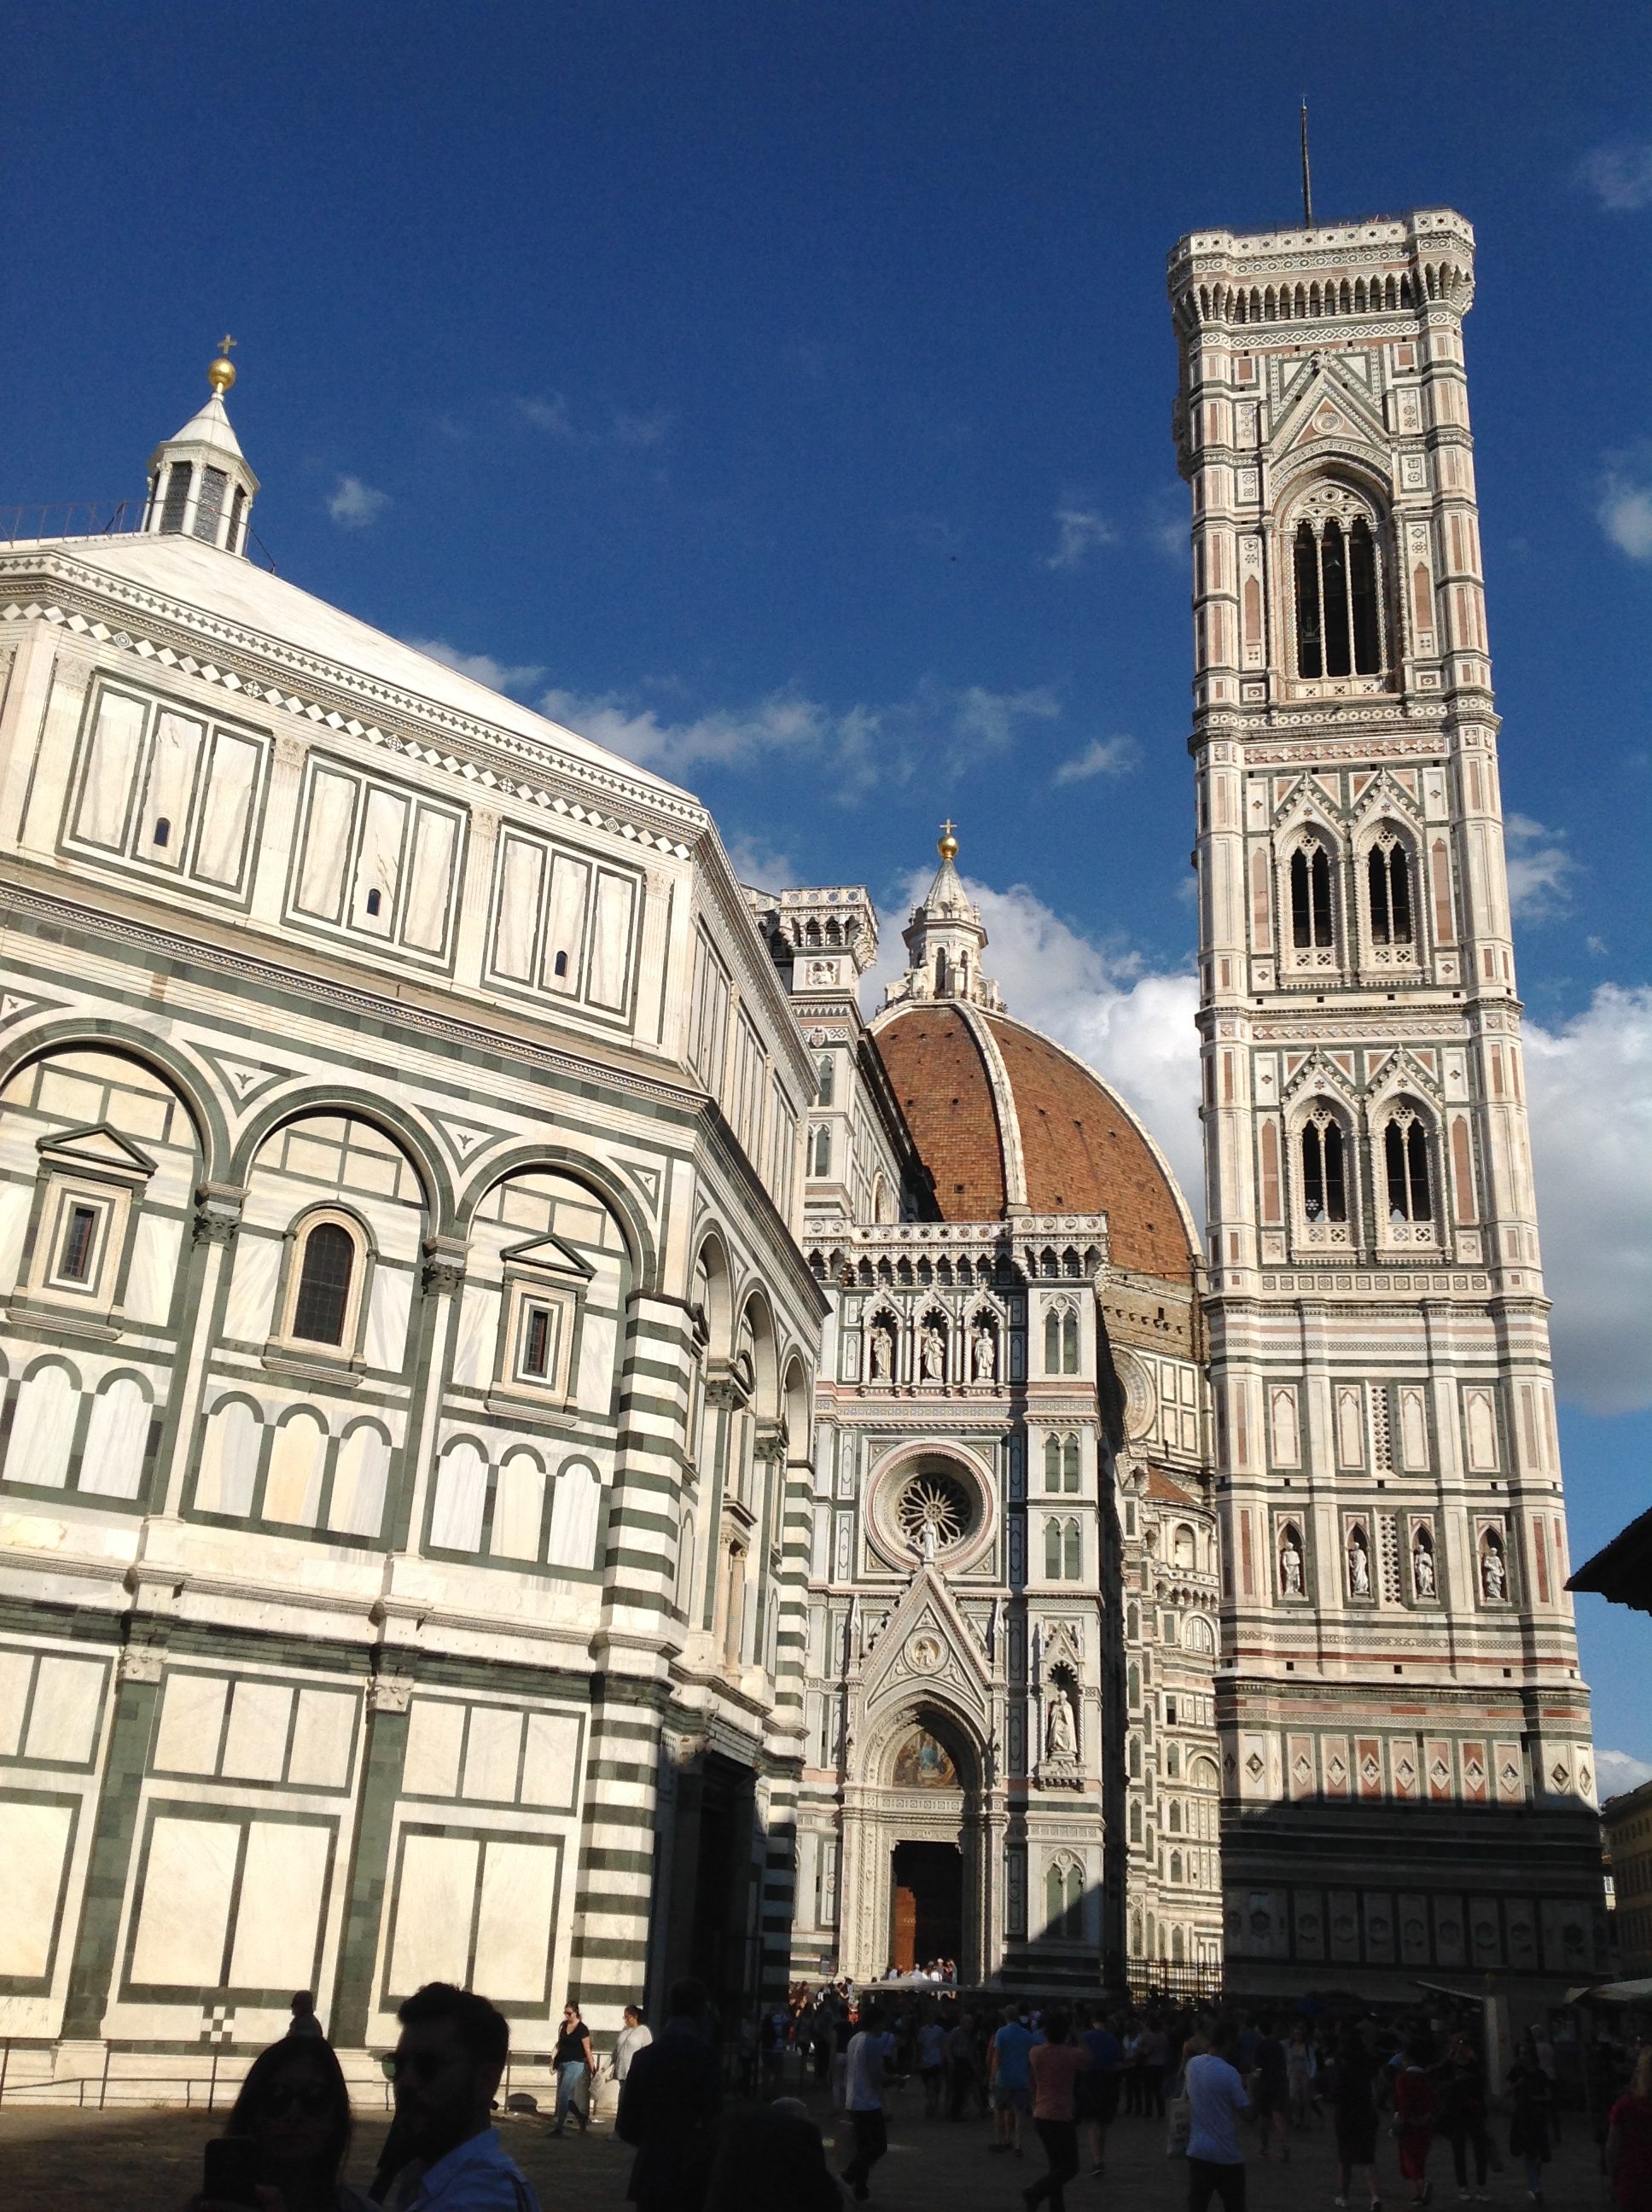 the Duomo